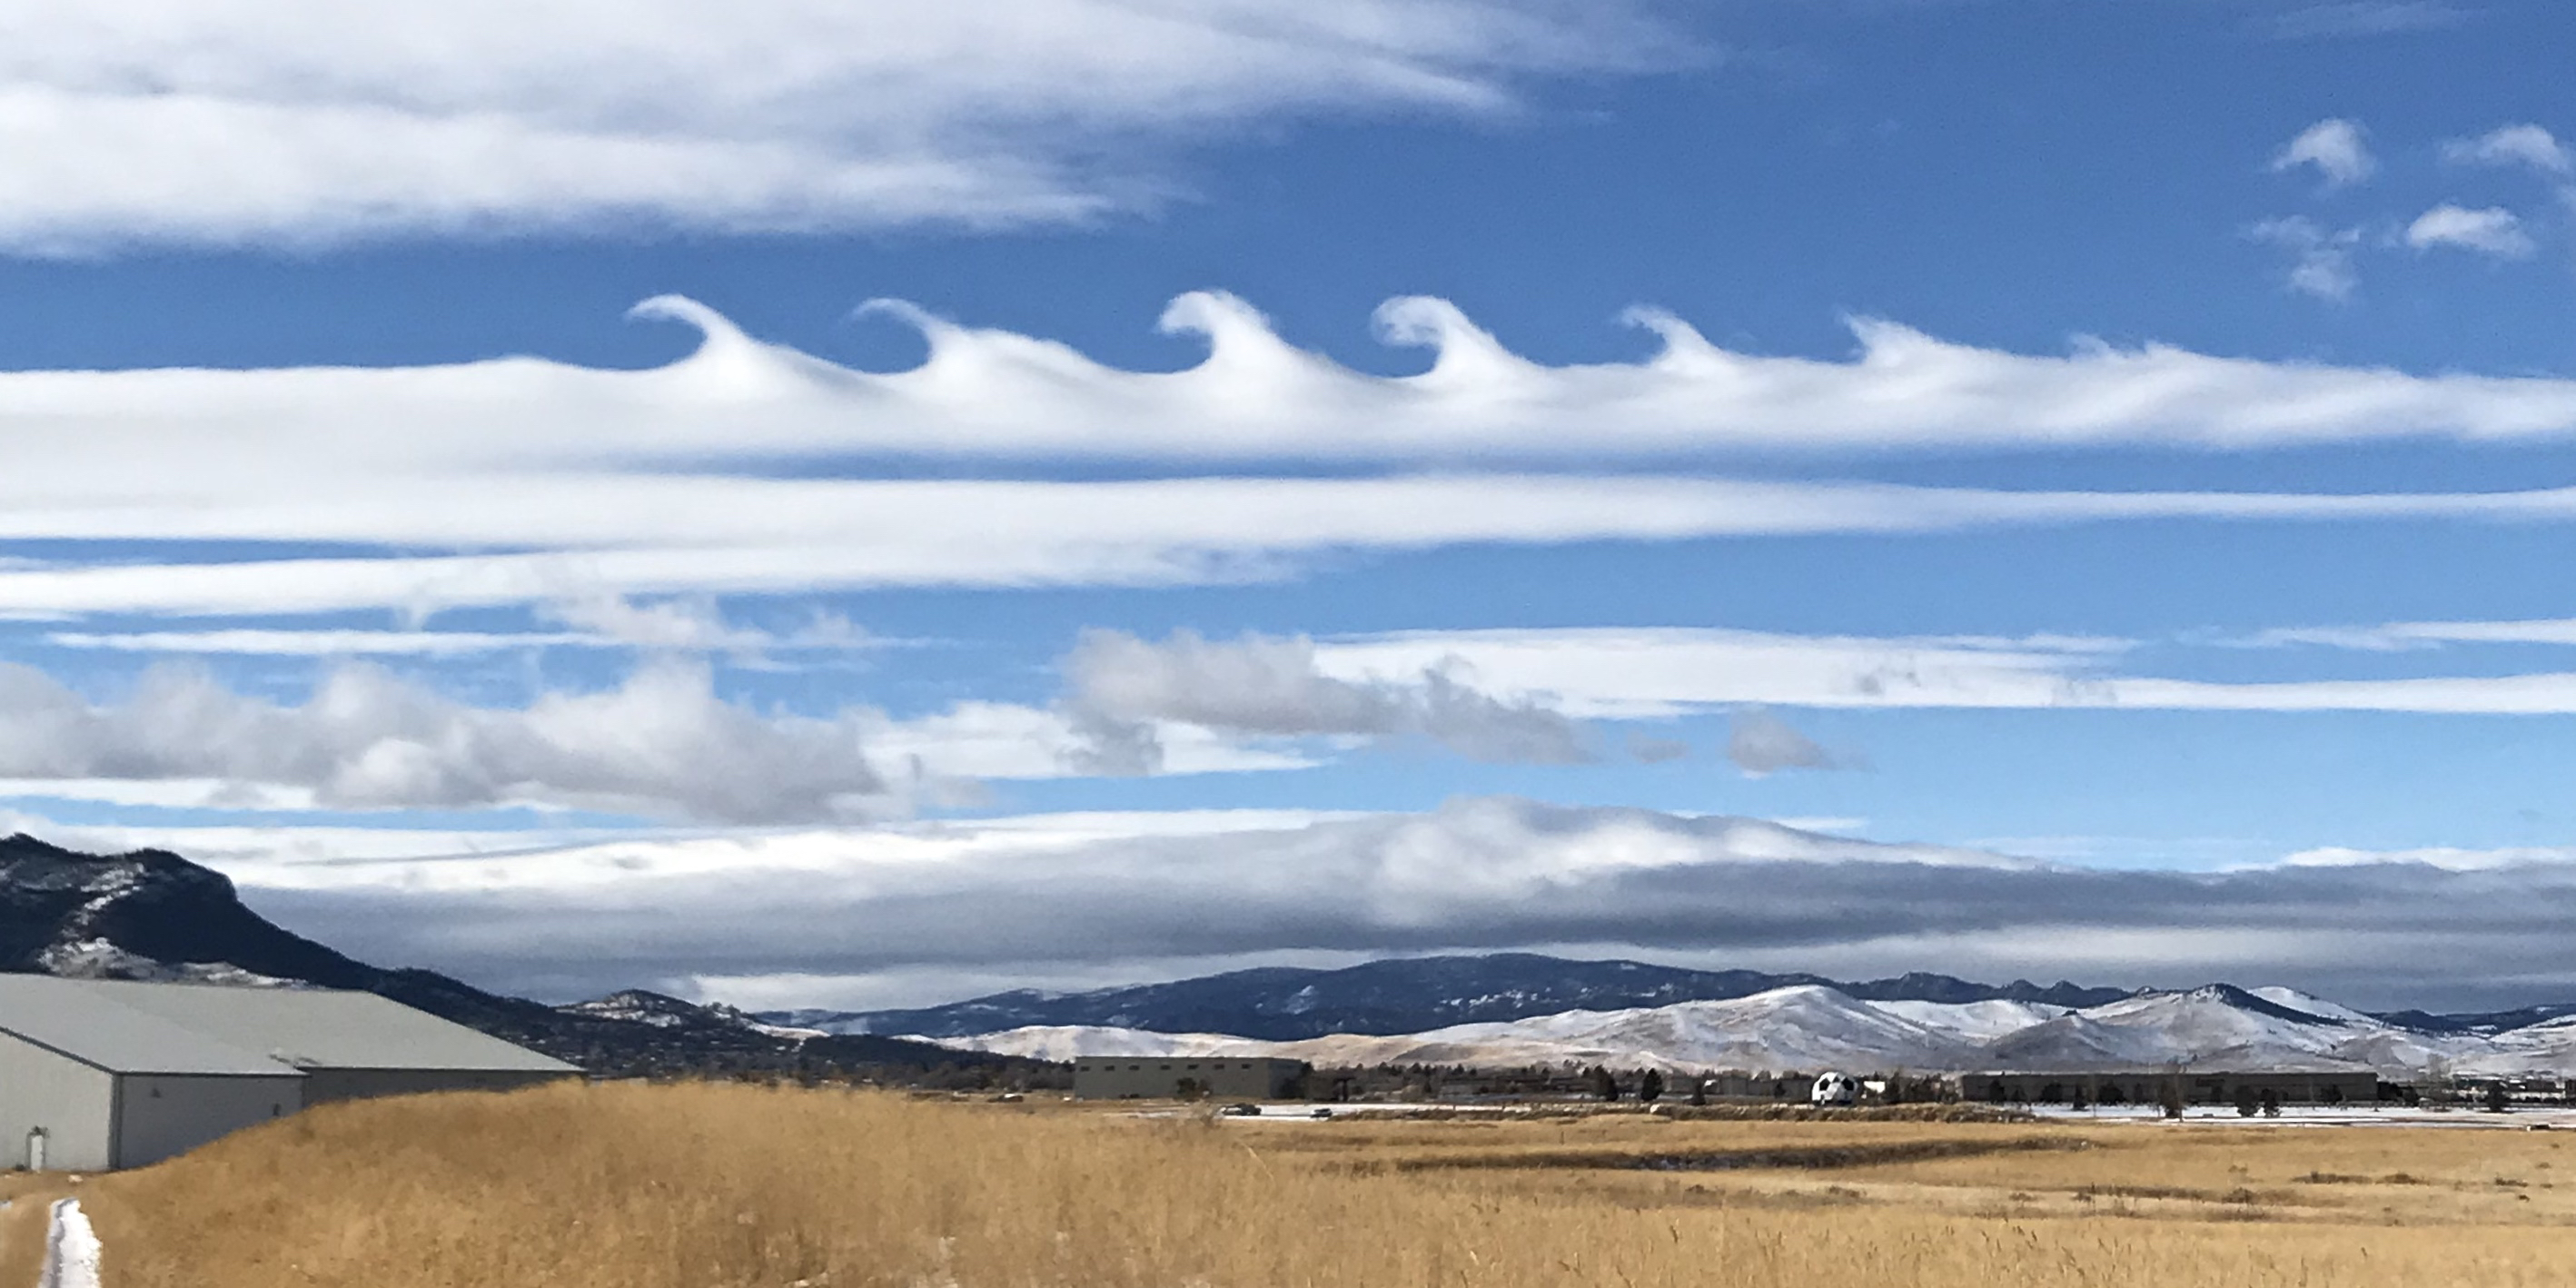 Giải mã 8 kiểu mây kỳ lạ trên bầu trời - 3